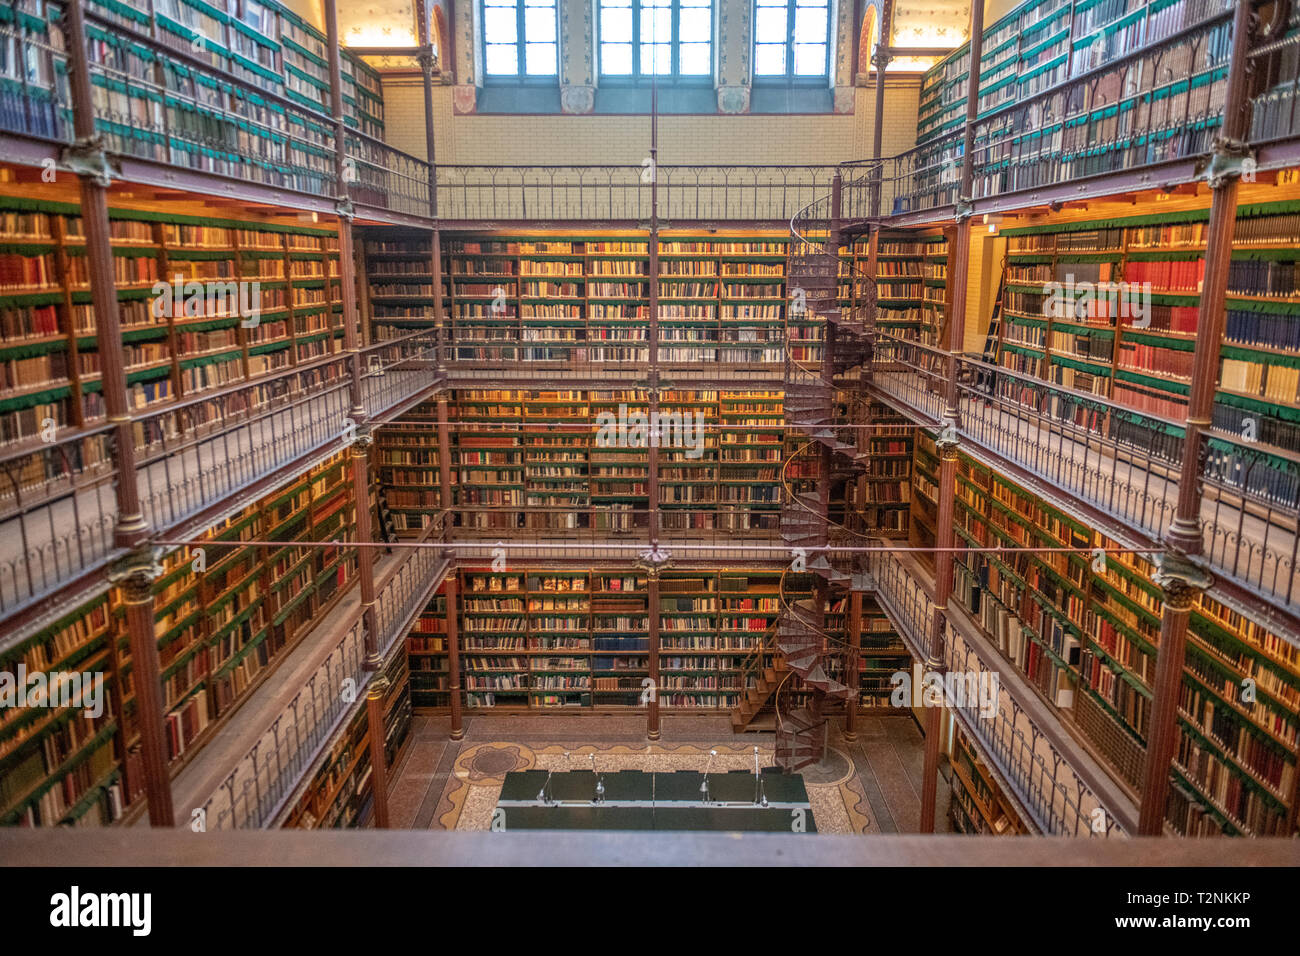 Les livres sont empilés au Rijksmuseum Research Library la plus grande bibliothèque de recherche en histoire de l'art public dans les Pays-Bas. Amsterdam, Pays-Bas Banque D'Images